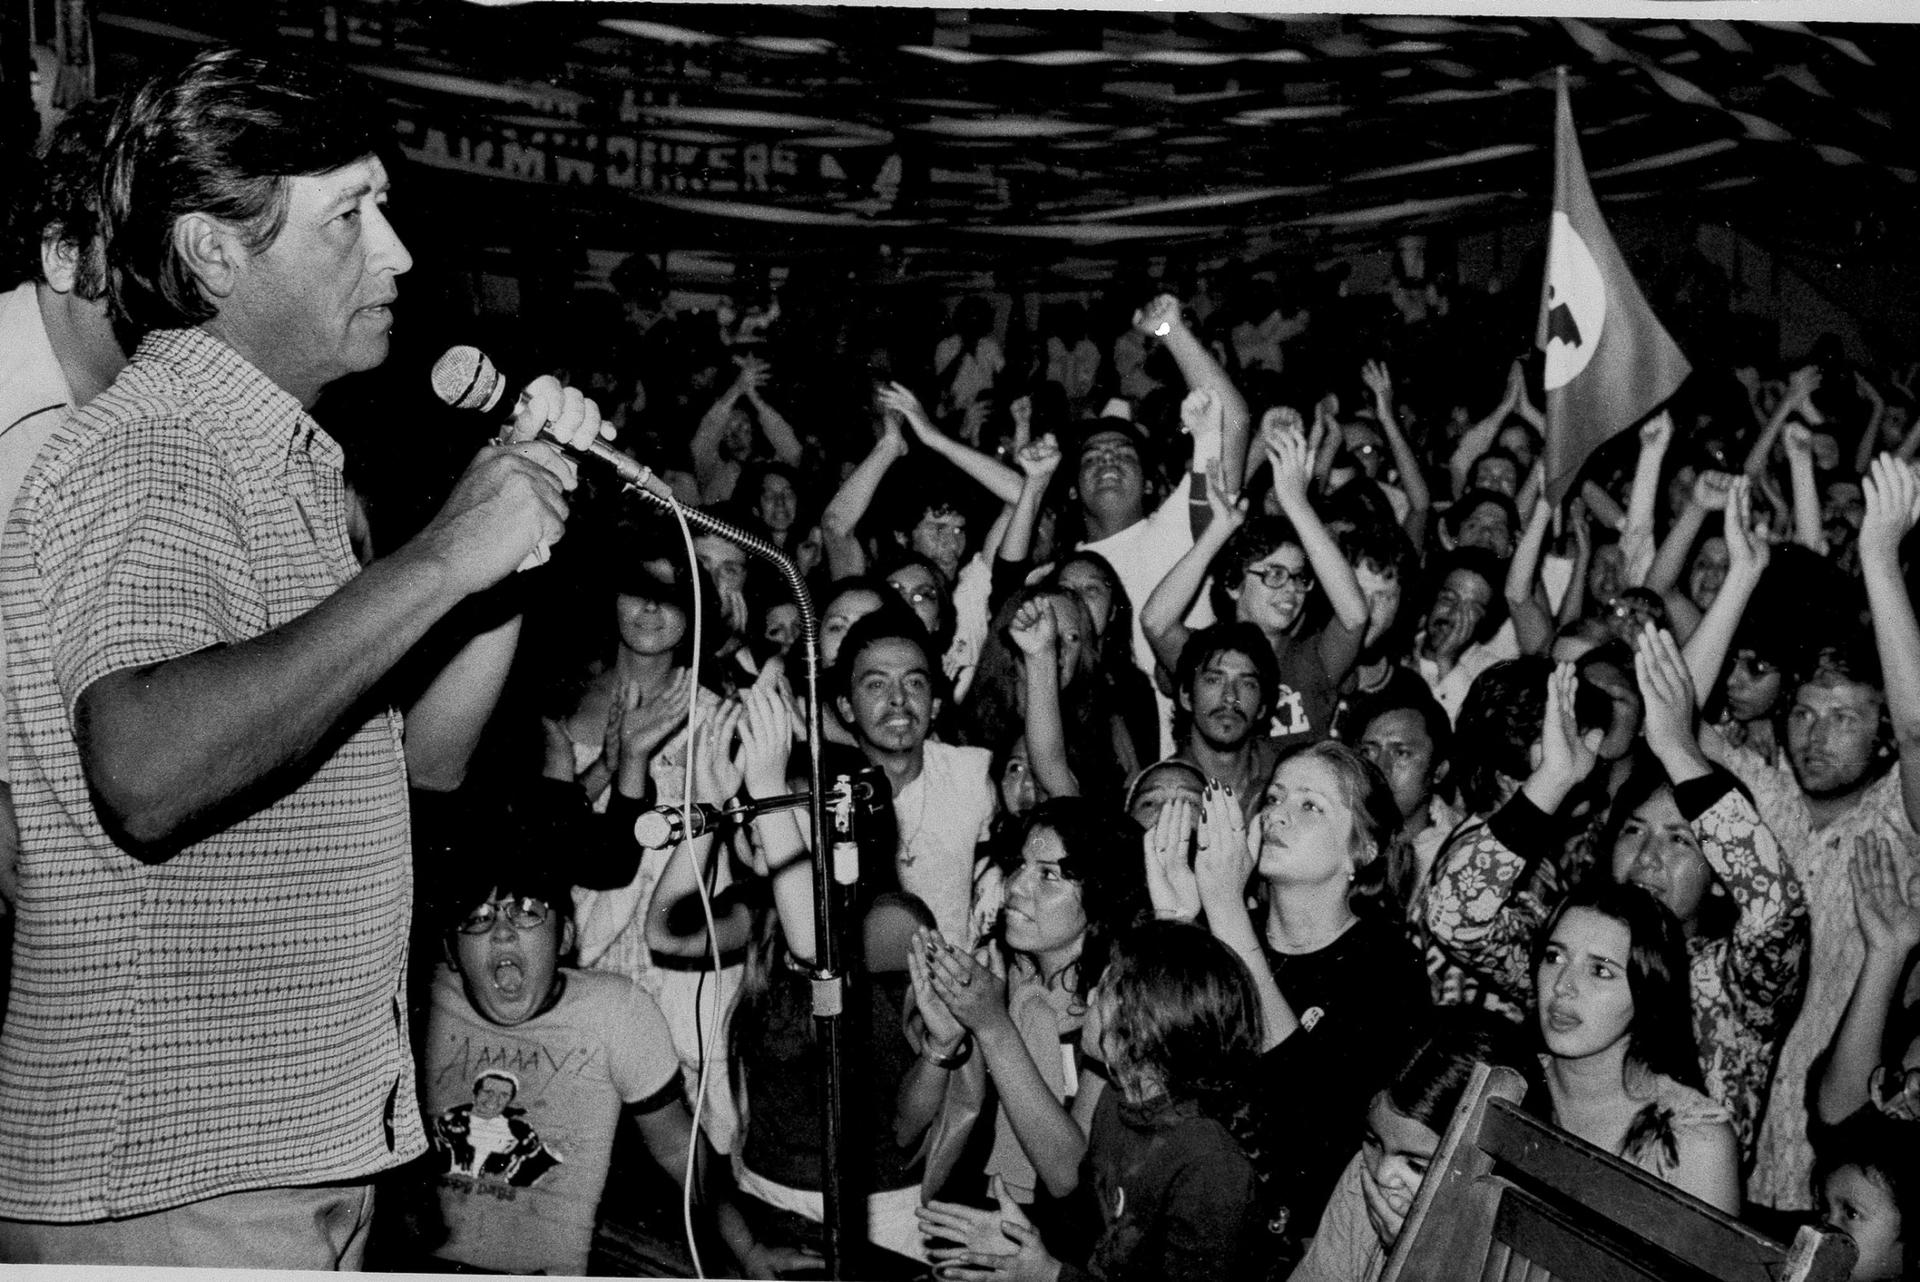 Una fotografia de Cesar Chavez hablando en frente a un grupo de personas.